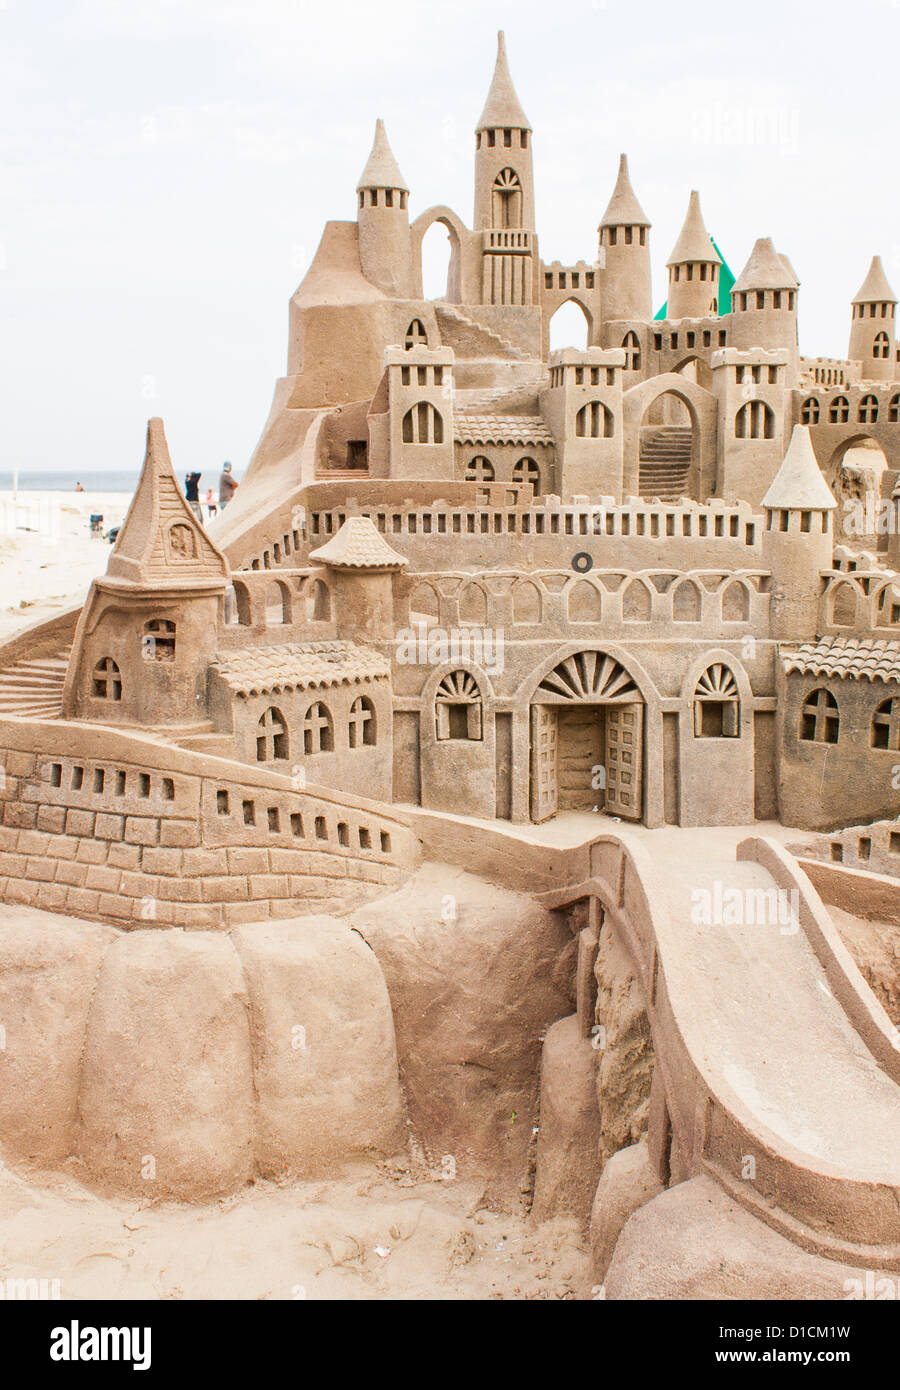 Grand château de sable sur la plage pendant une journée d'été Banque D'Images